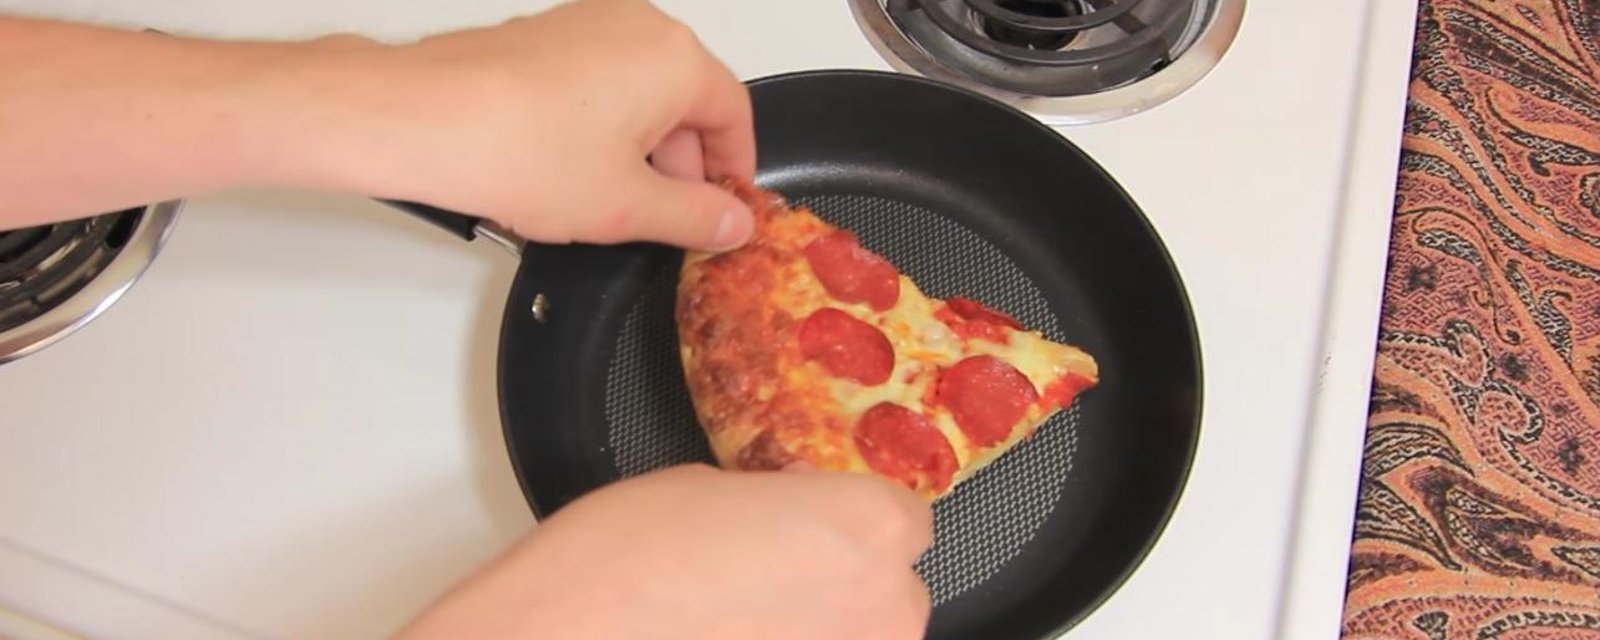 Une pointe de pizza dans une POÊLE, mais pourquoi?